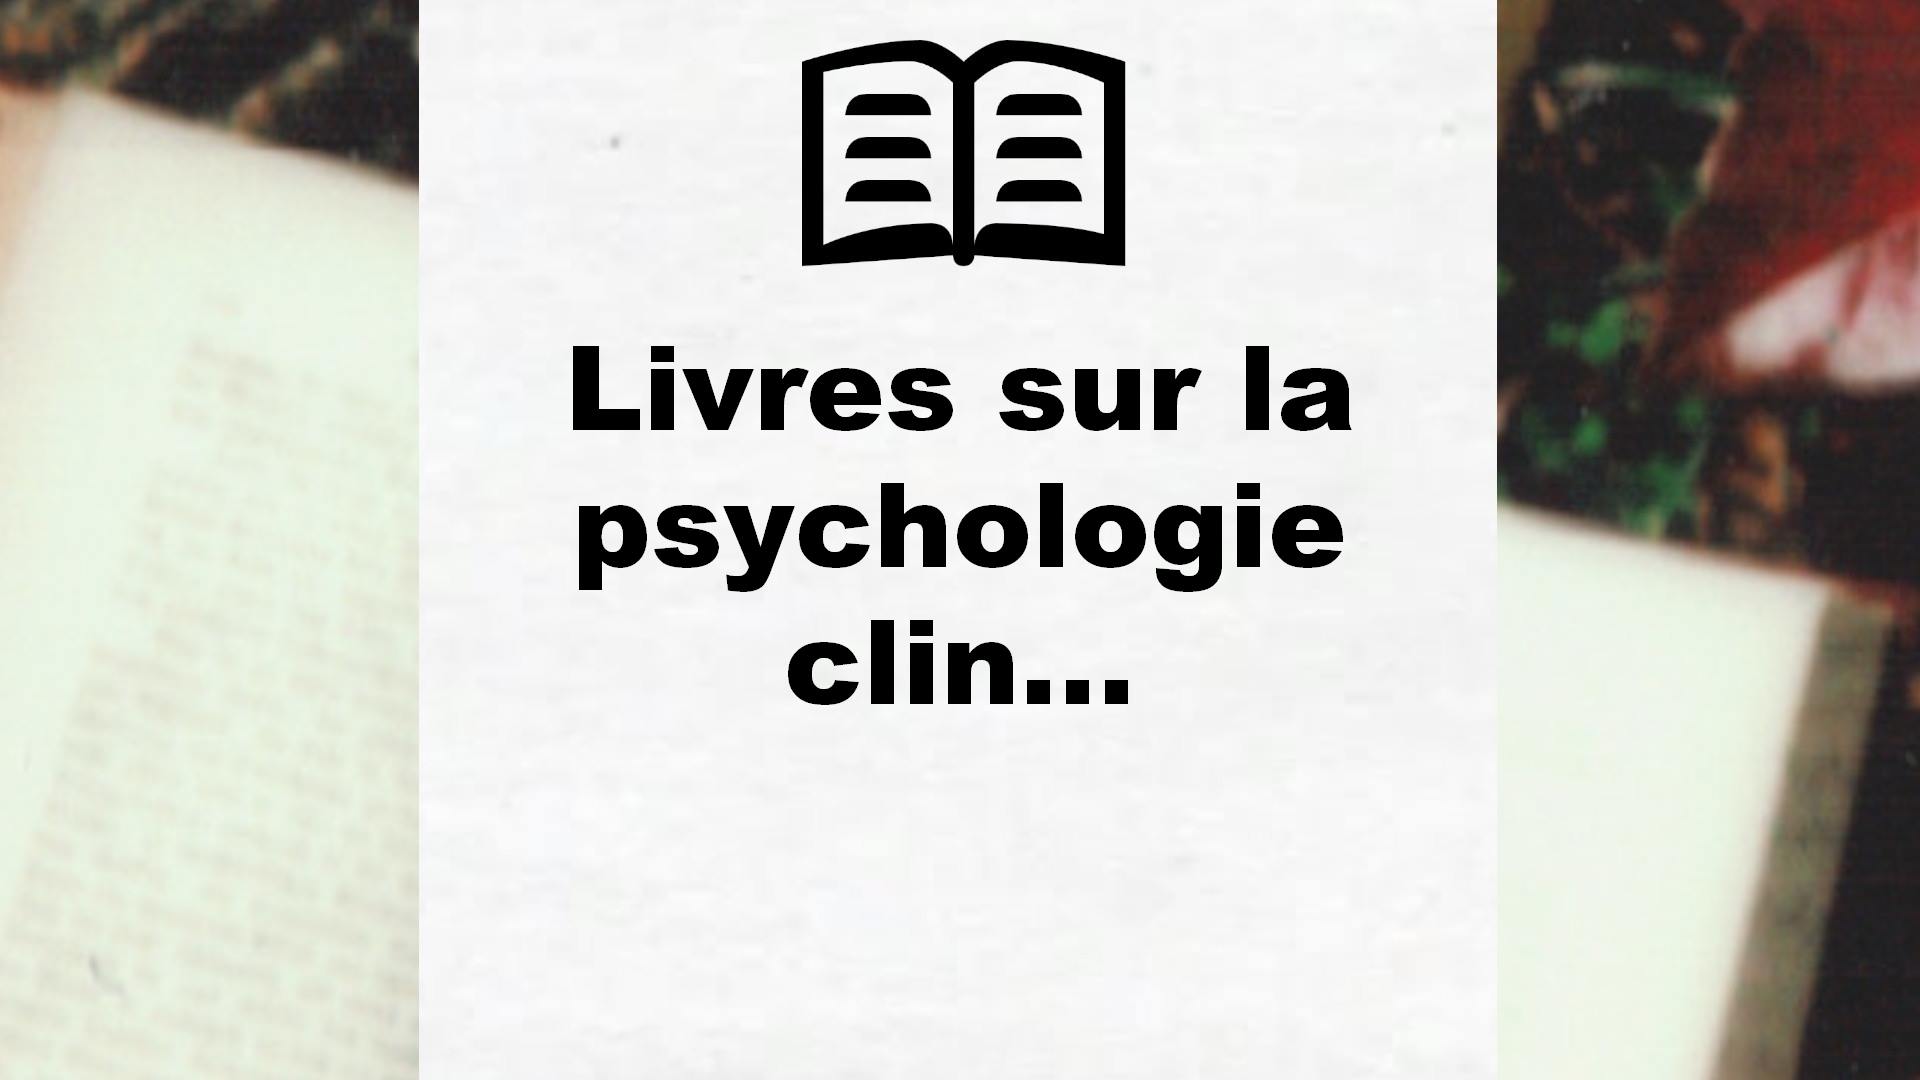 Livres sur la psychologie clinique